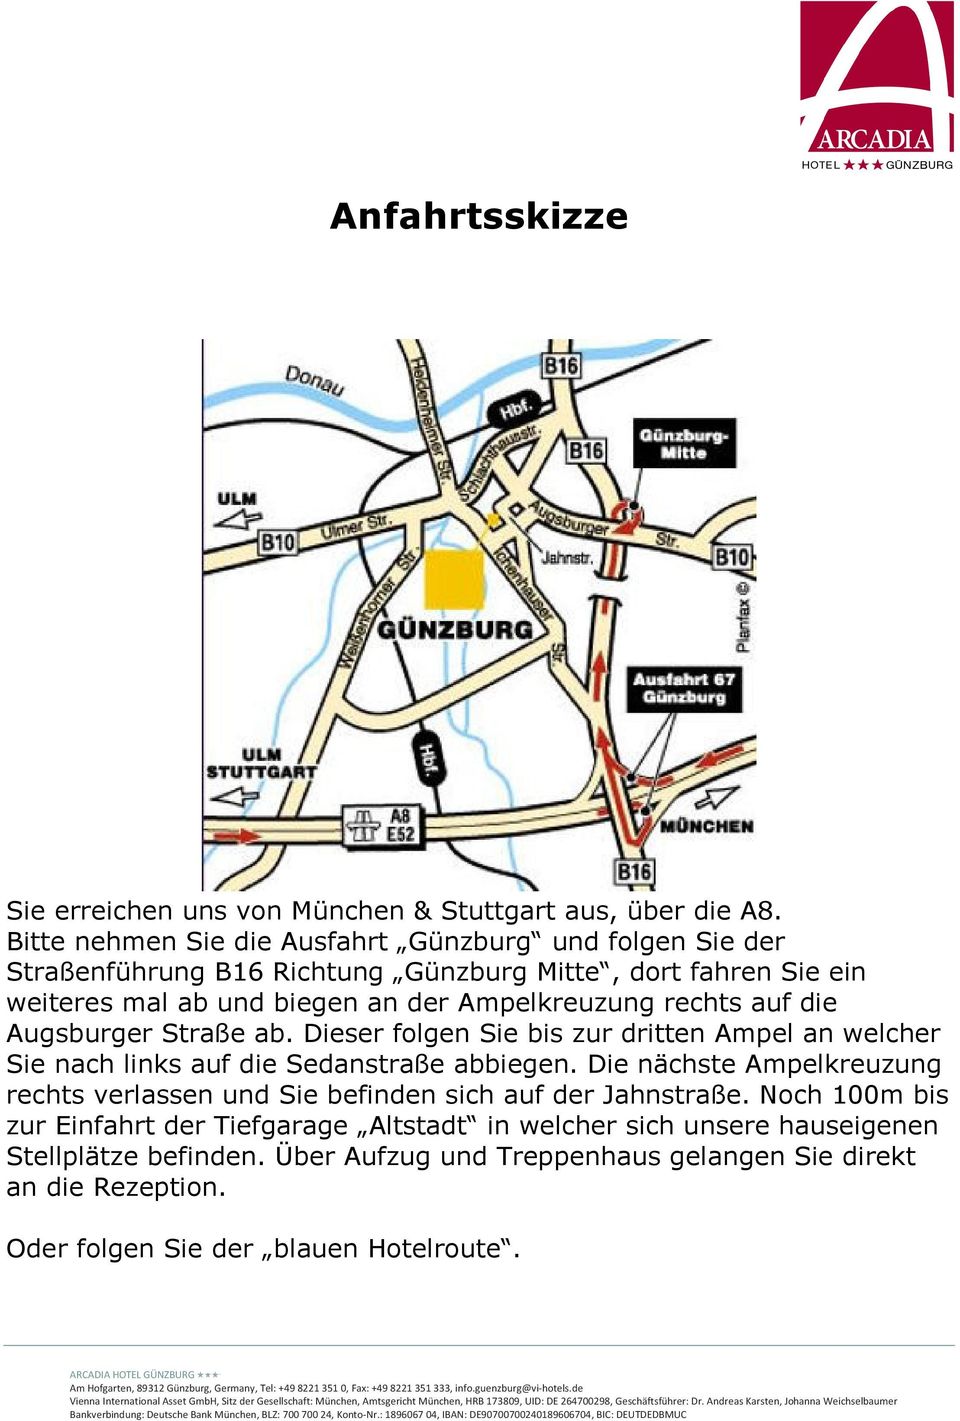 Ampelkreuzung rechts auf die Augsburger Straße ab. Dieser folgen Sie bis zur dritten Ampel an welcher Sie nach links auf die Sedanstraße abbiegen.